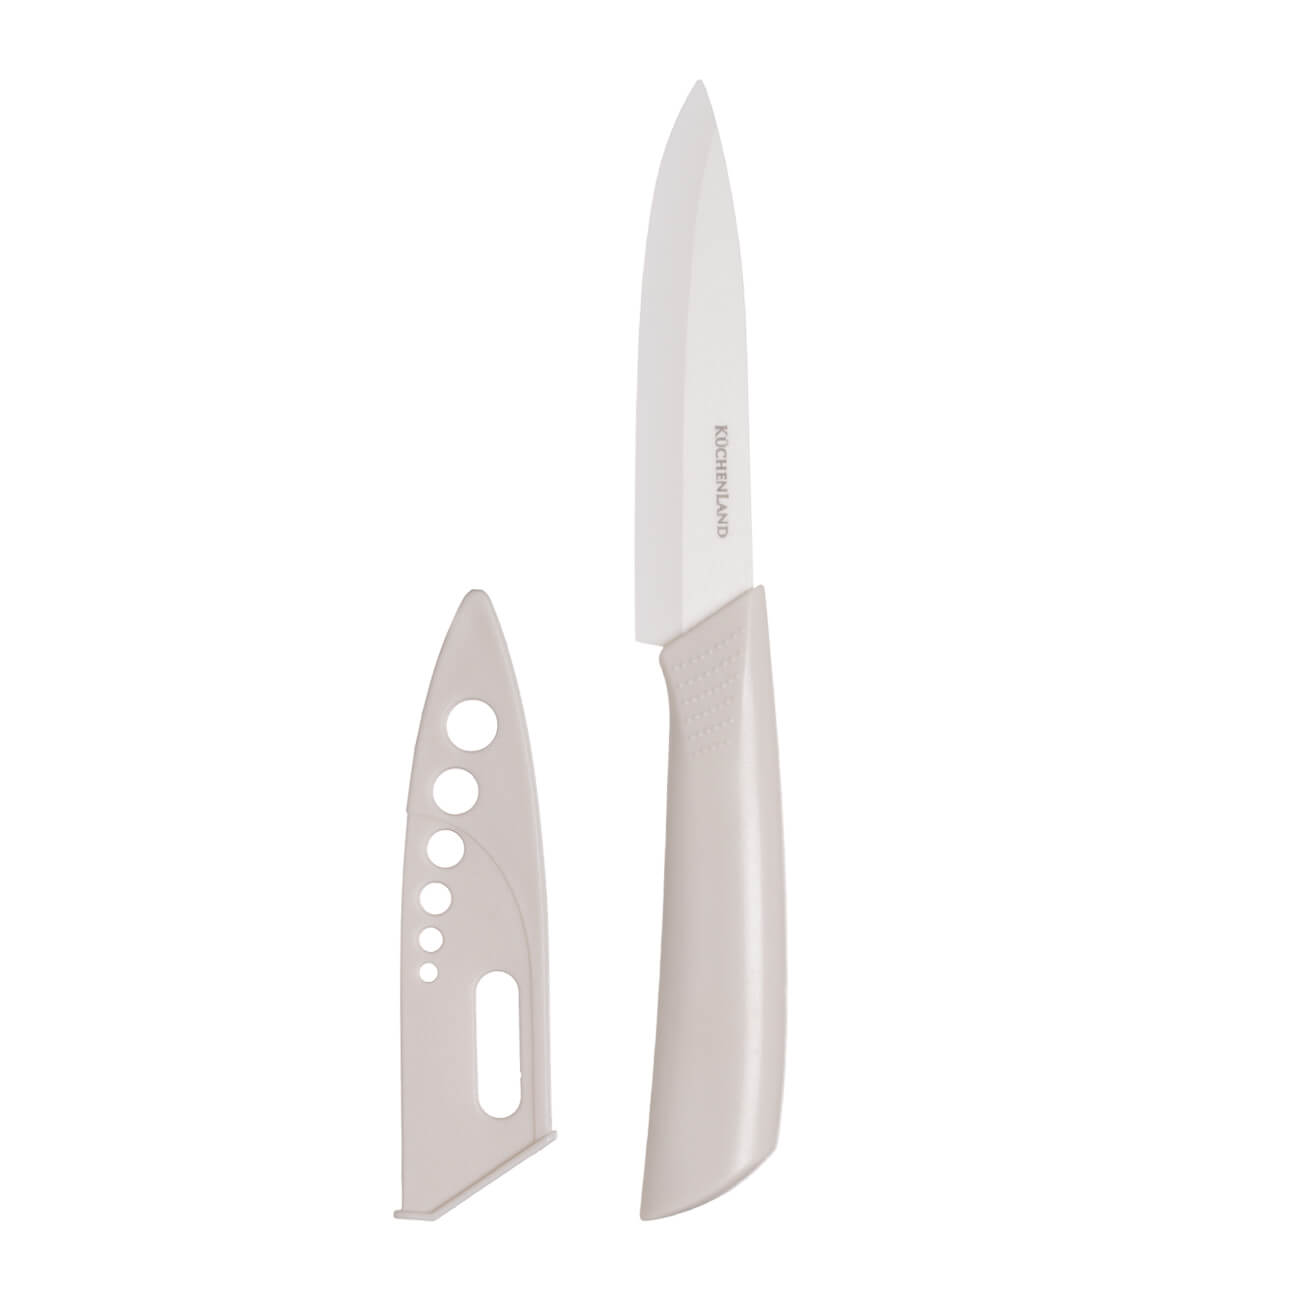 Нож для нарезки, 13 см, с чехлом, керамика/пластик, молочный, Regular изображение № 1